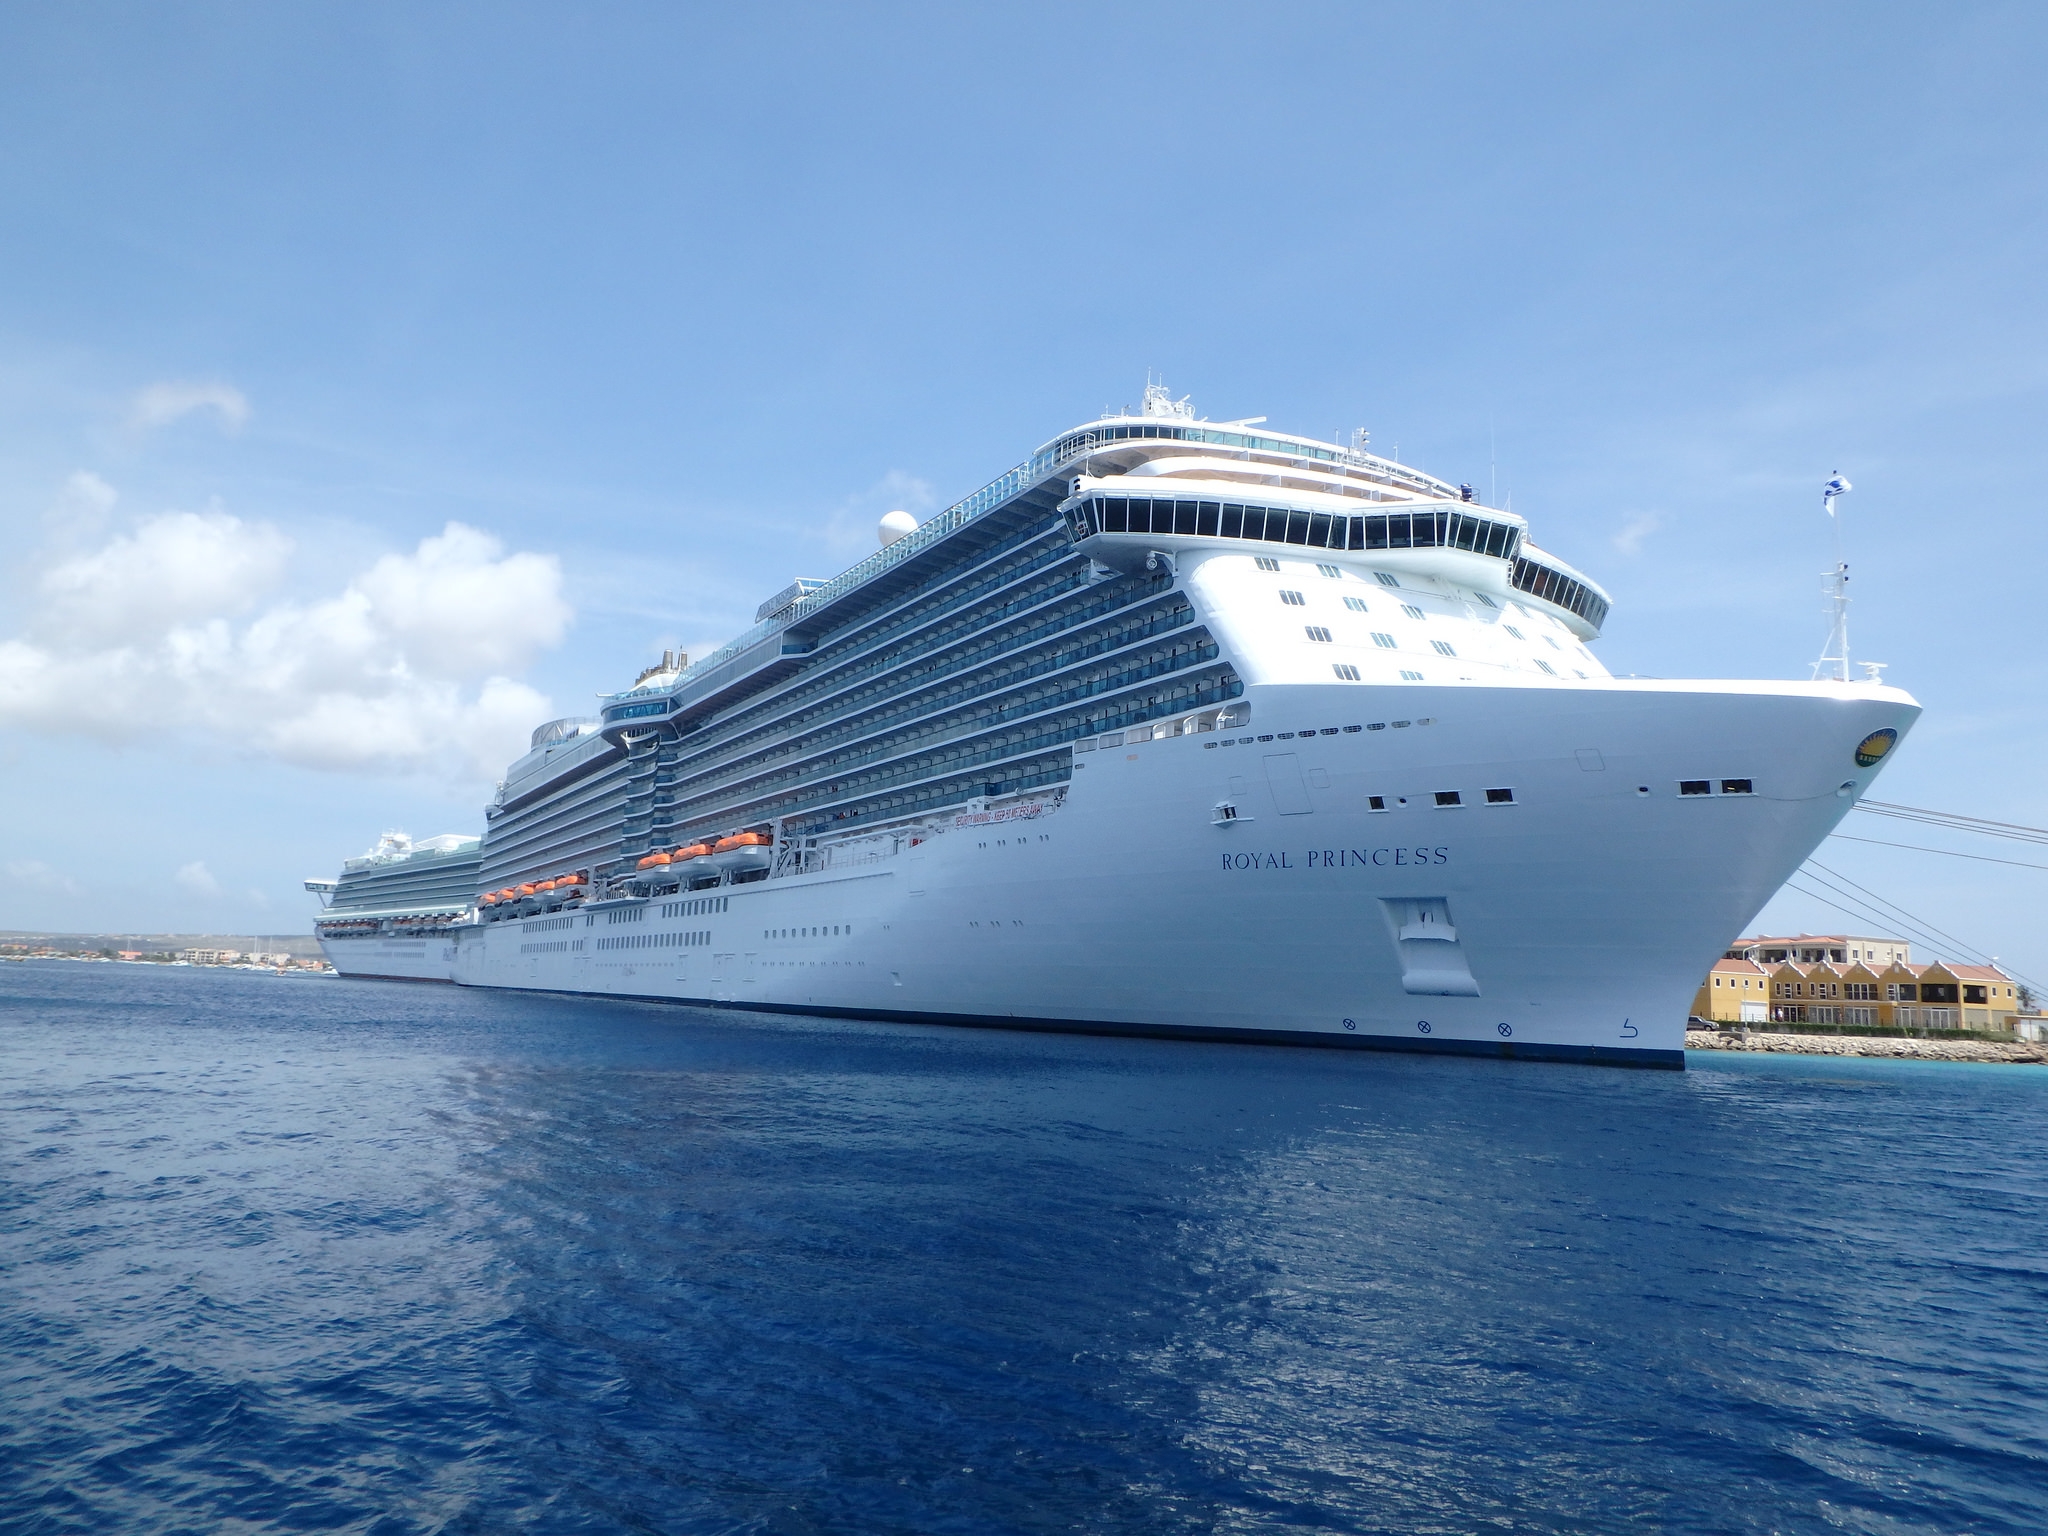 Cruise Review: Royal Princess